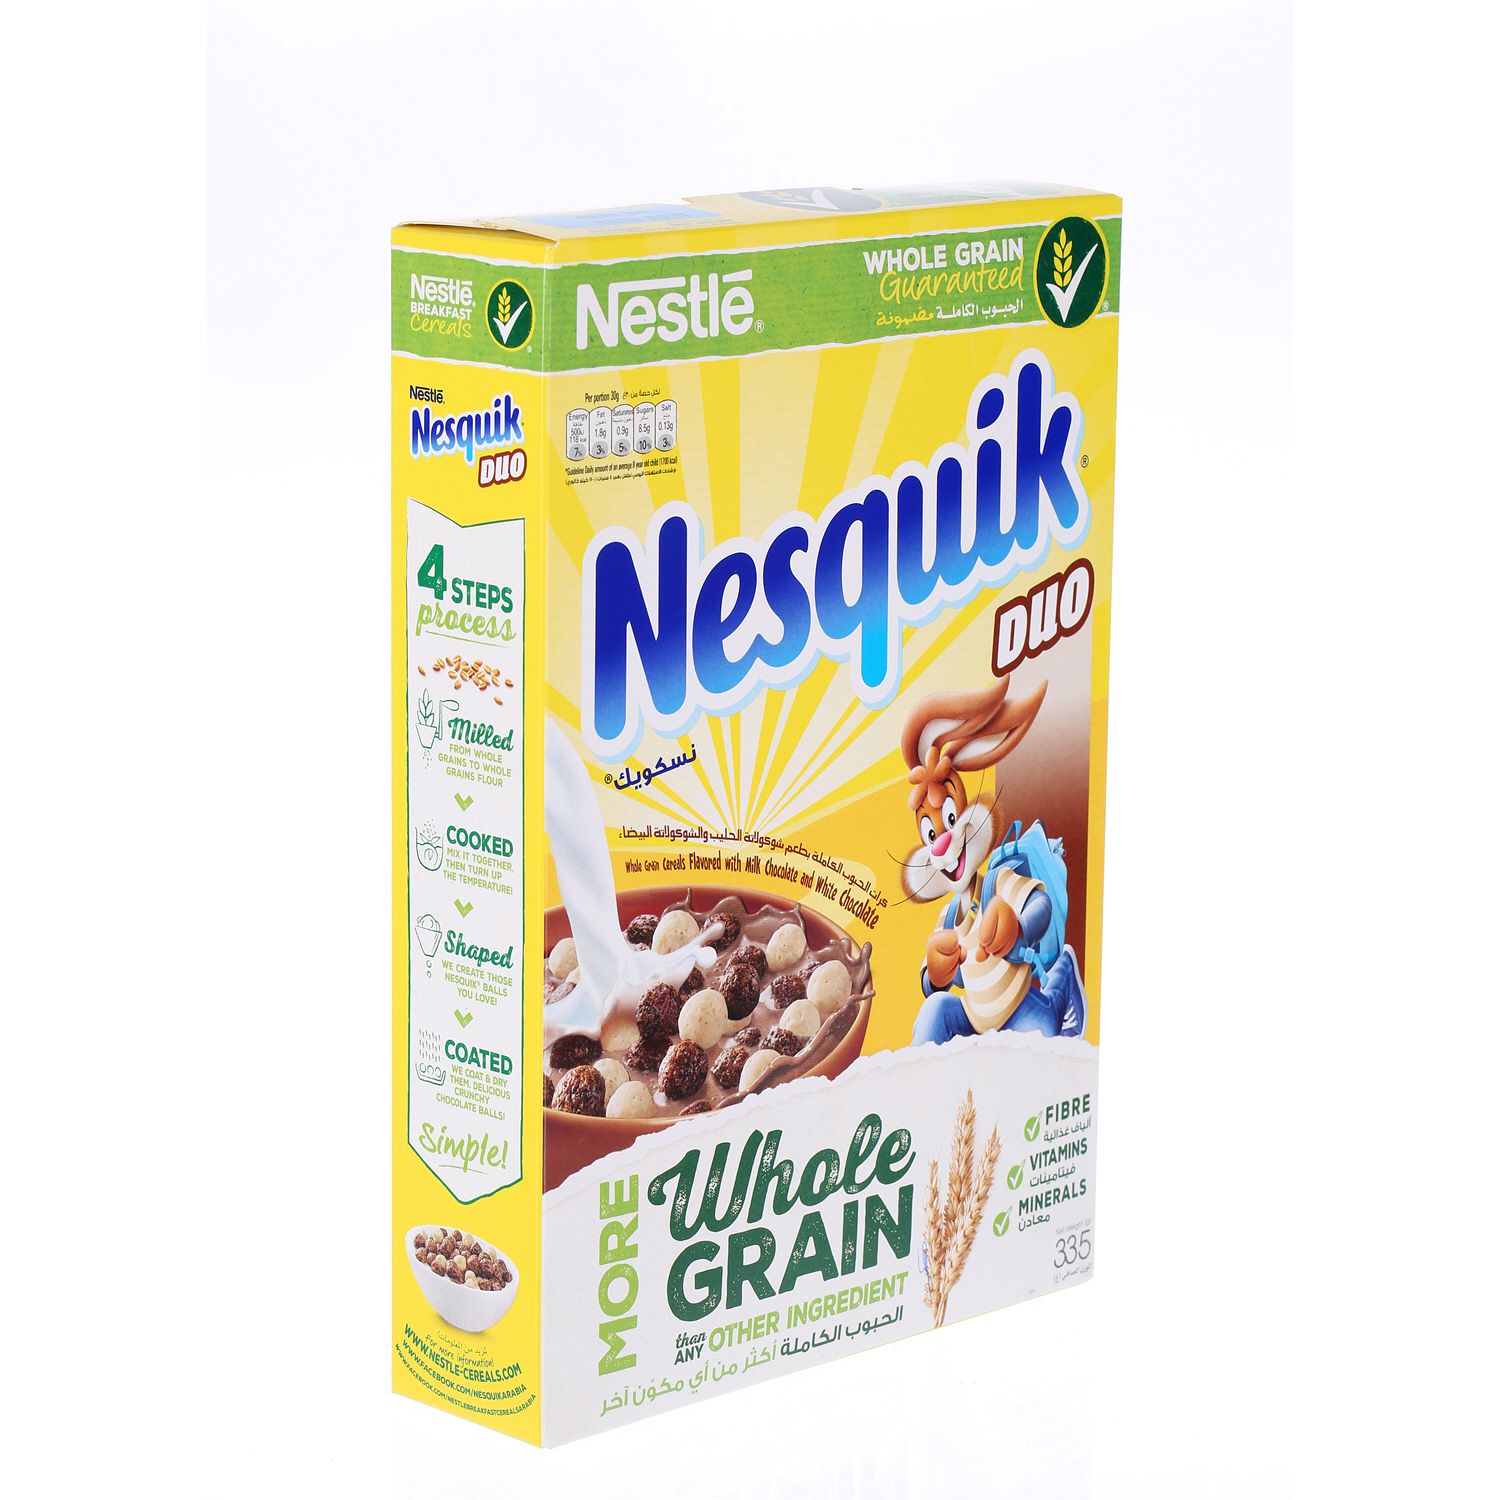 Nestlé Nesquick Duo Cereal 335 g